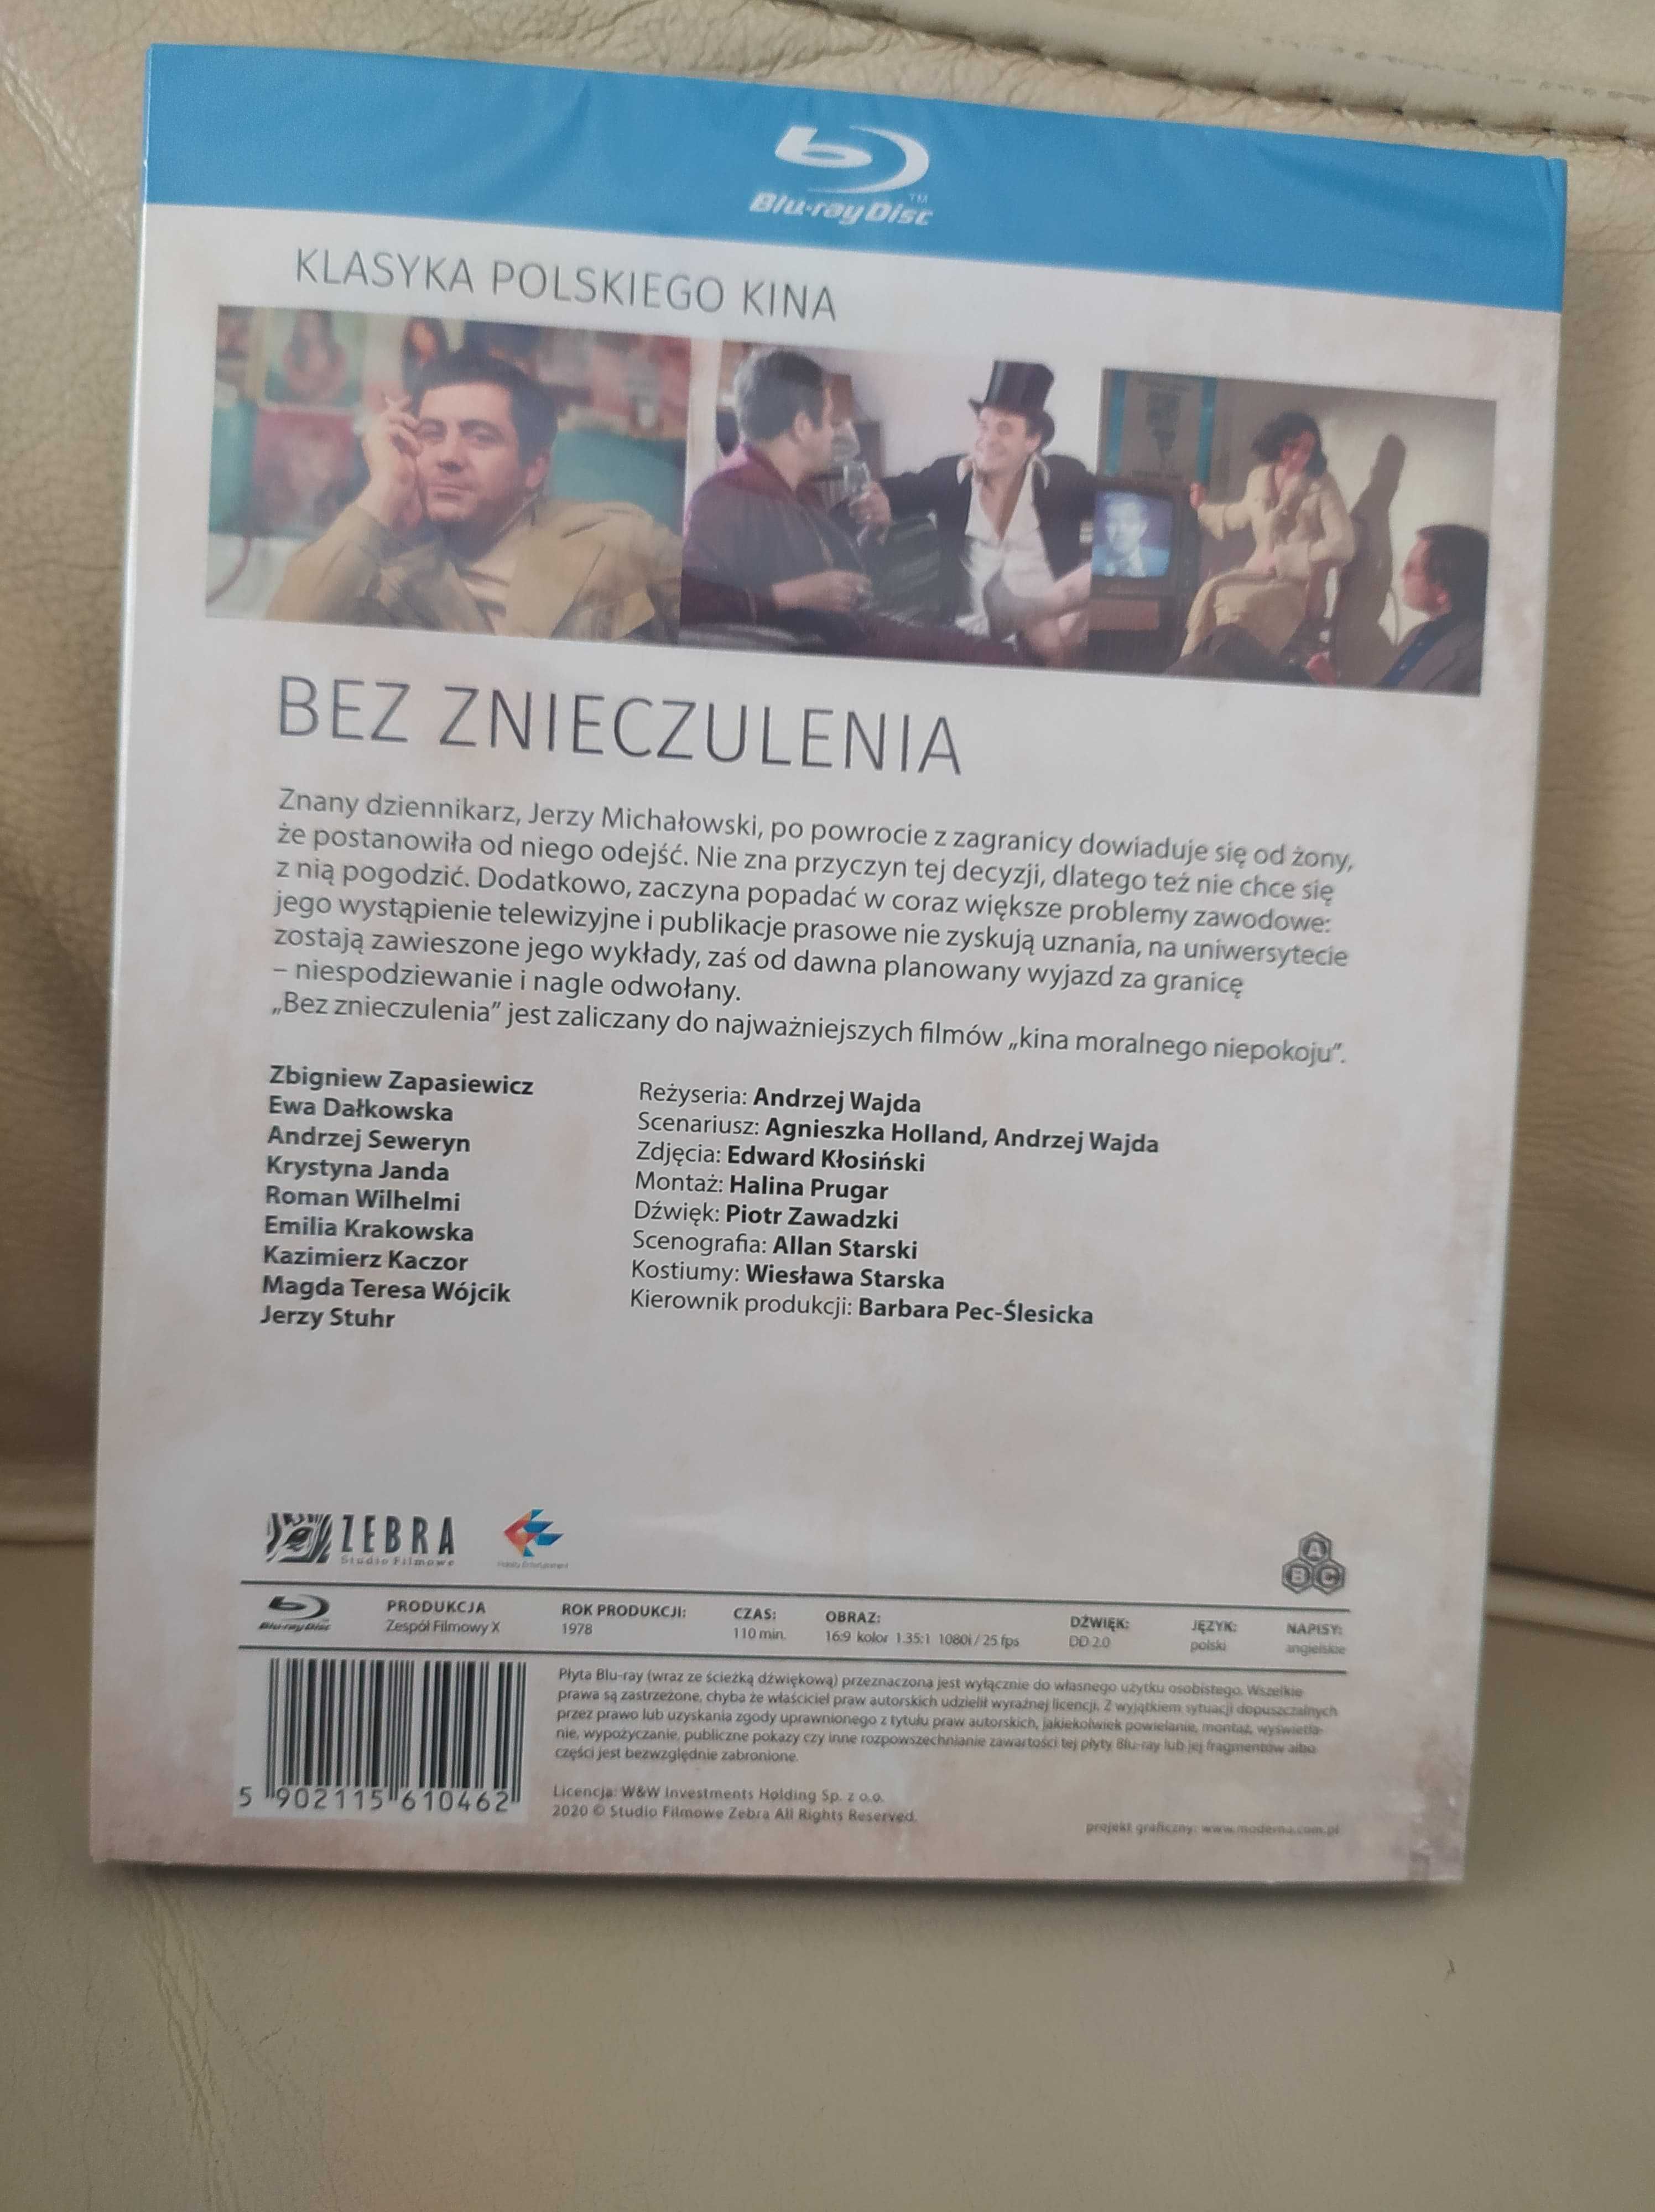 Blu-ray Film "Bez znieczulenia", Andrzej Wajda, nowy, folia